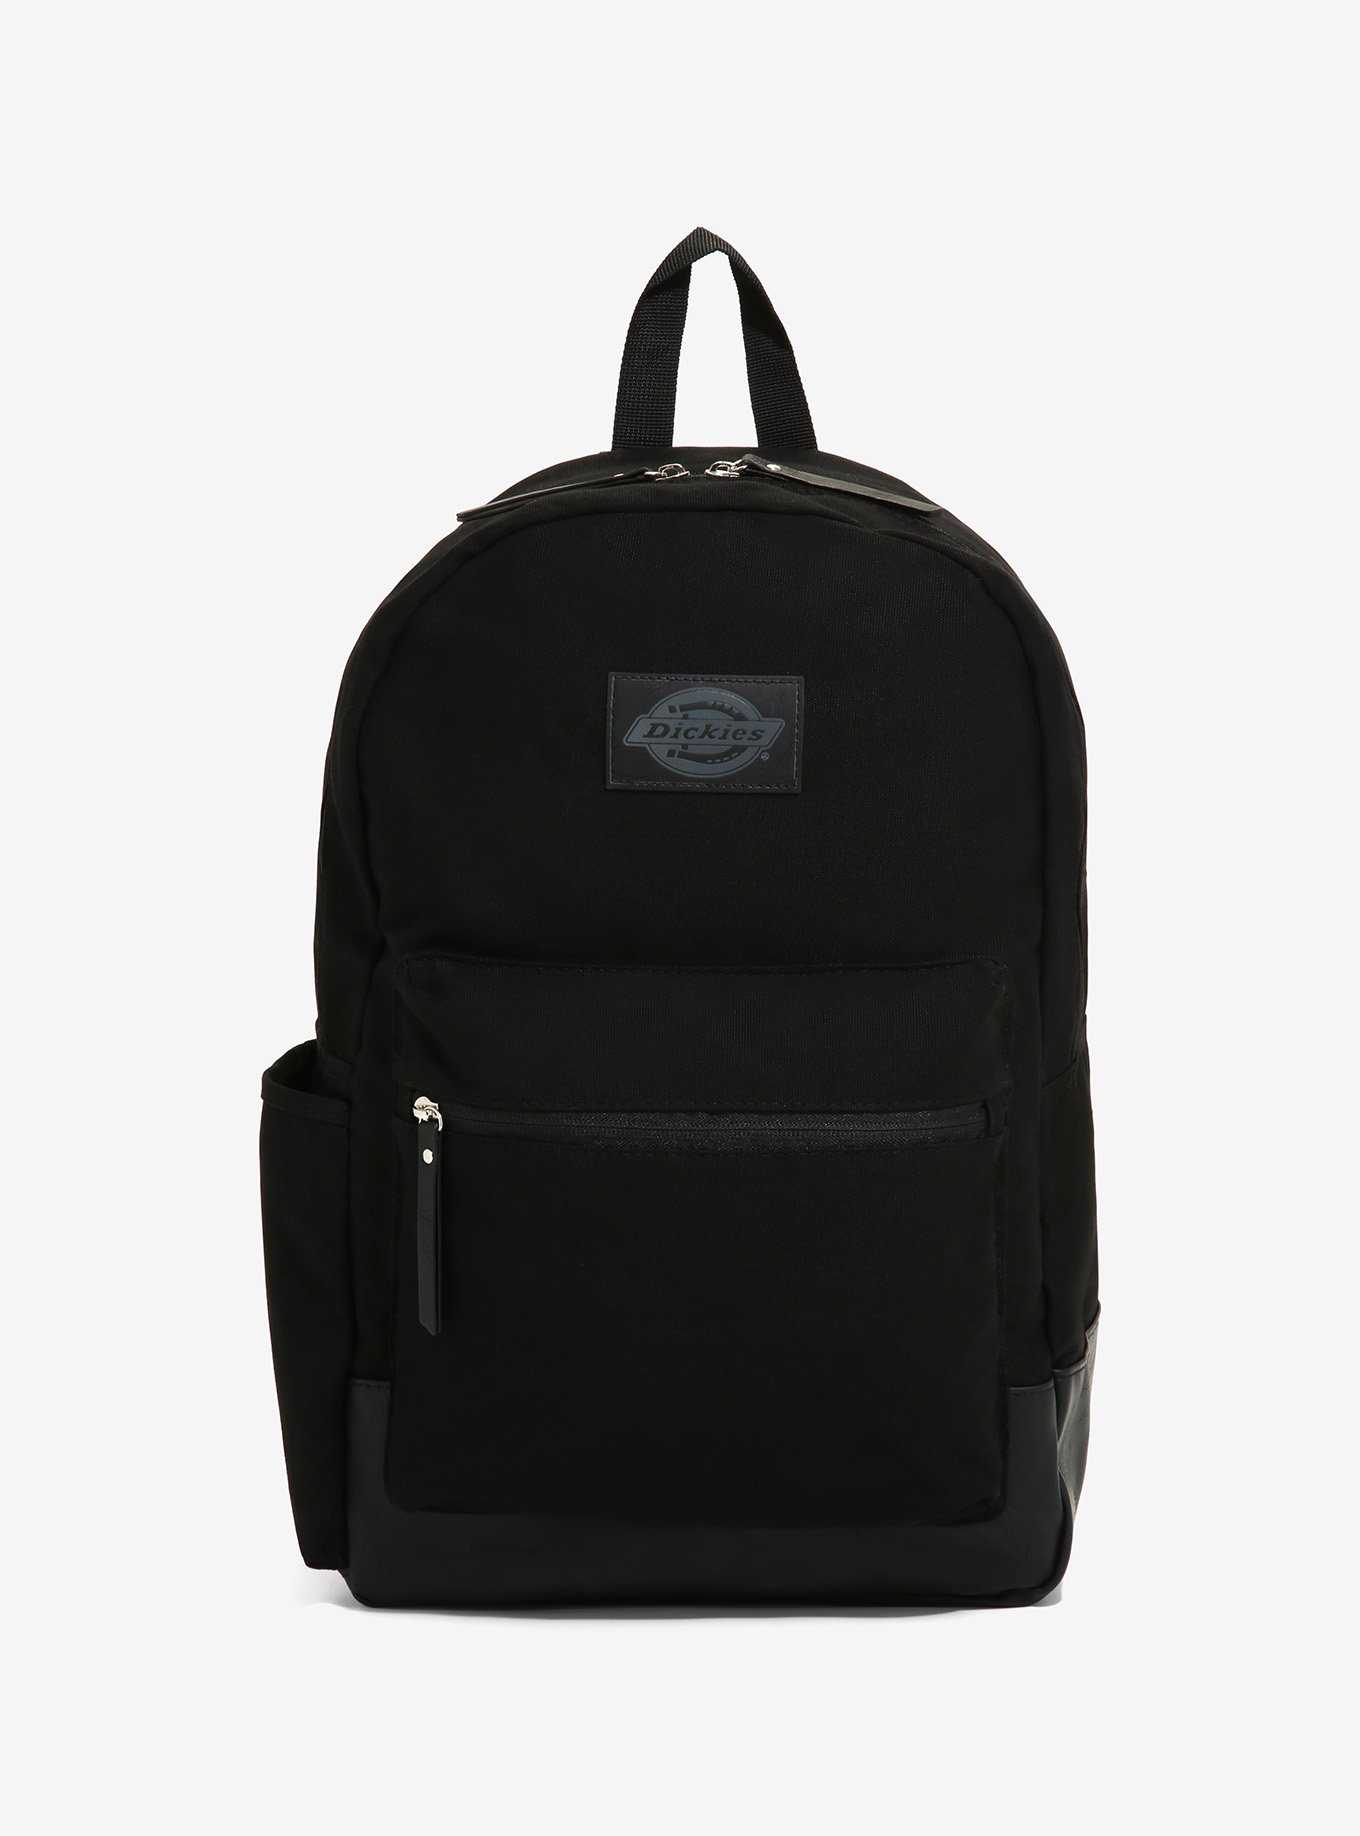 Dickies Black Backpack, , hi-res